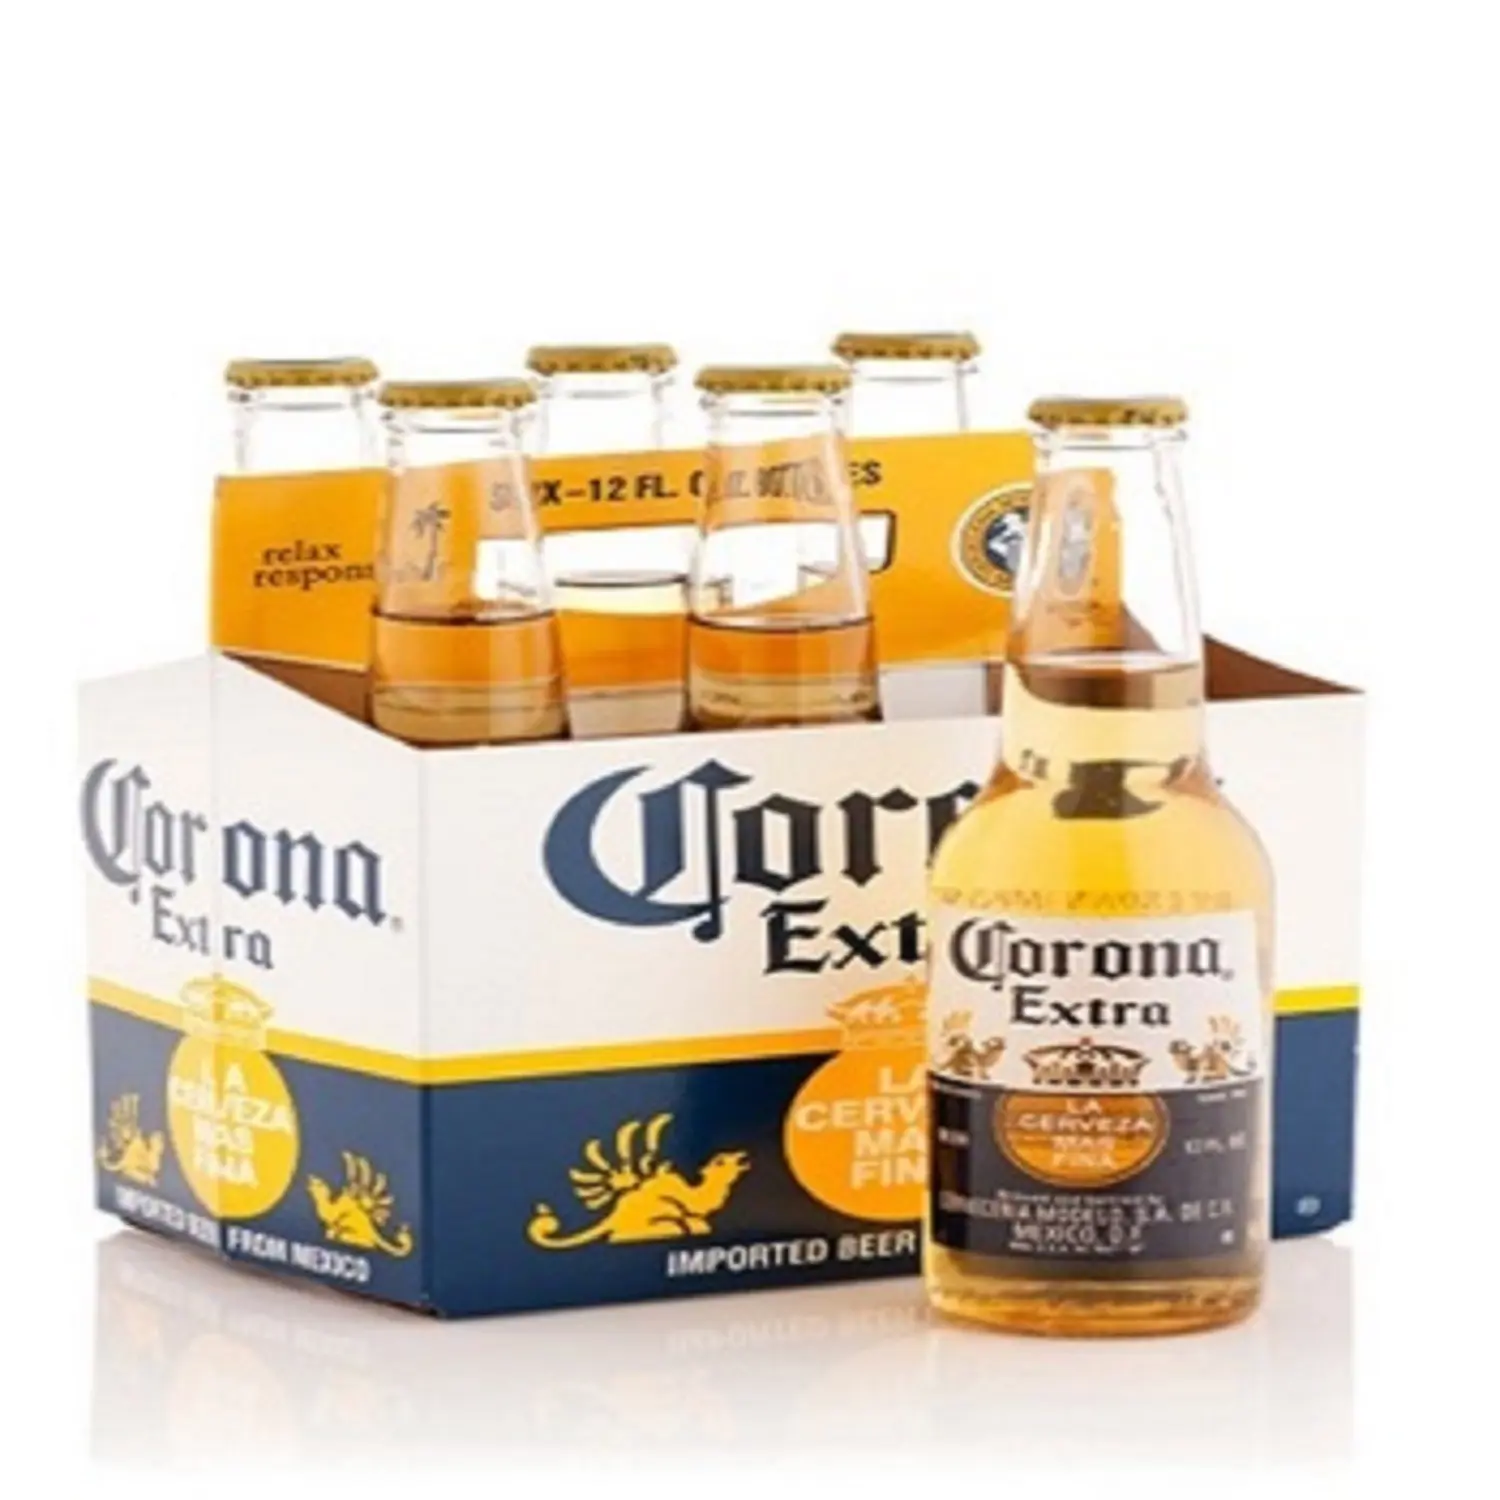 Original Mexico Corona Extra cheap prices